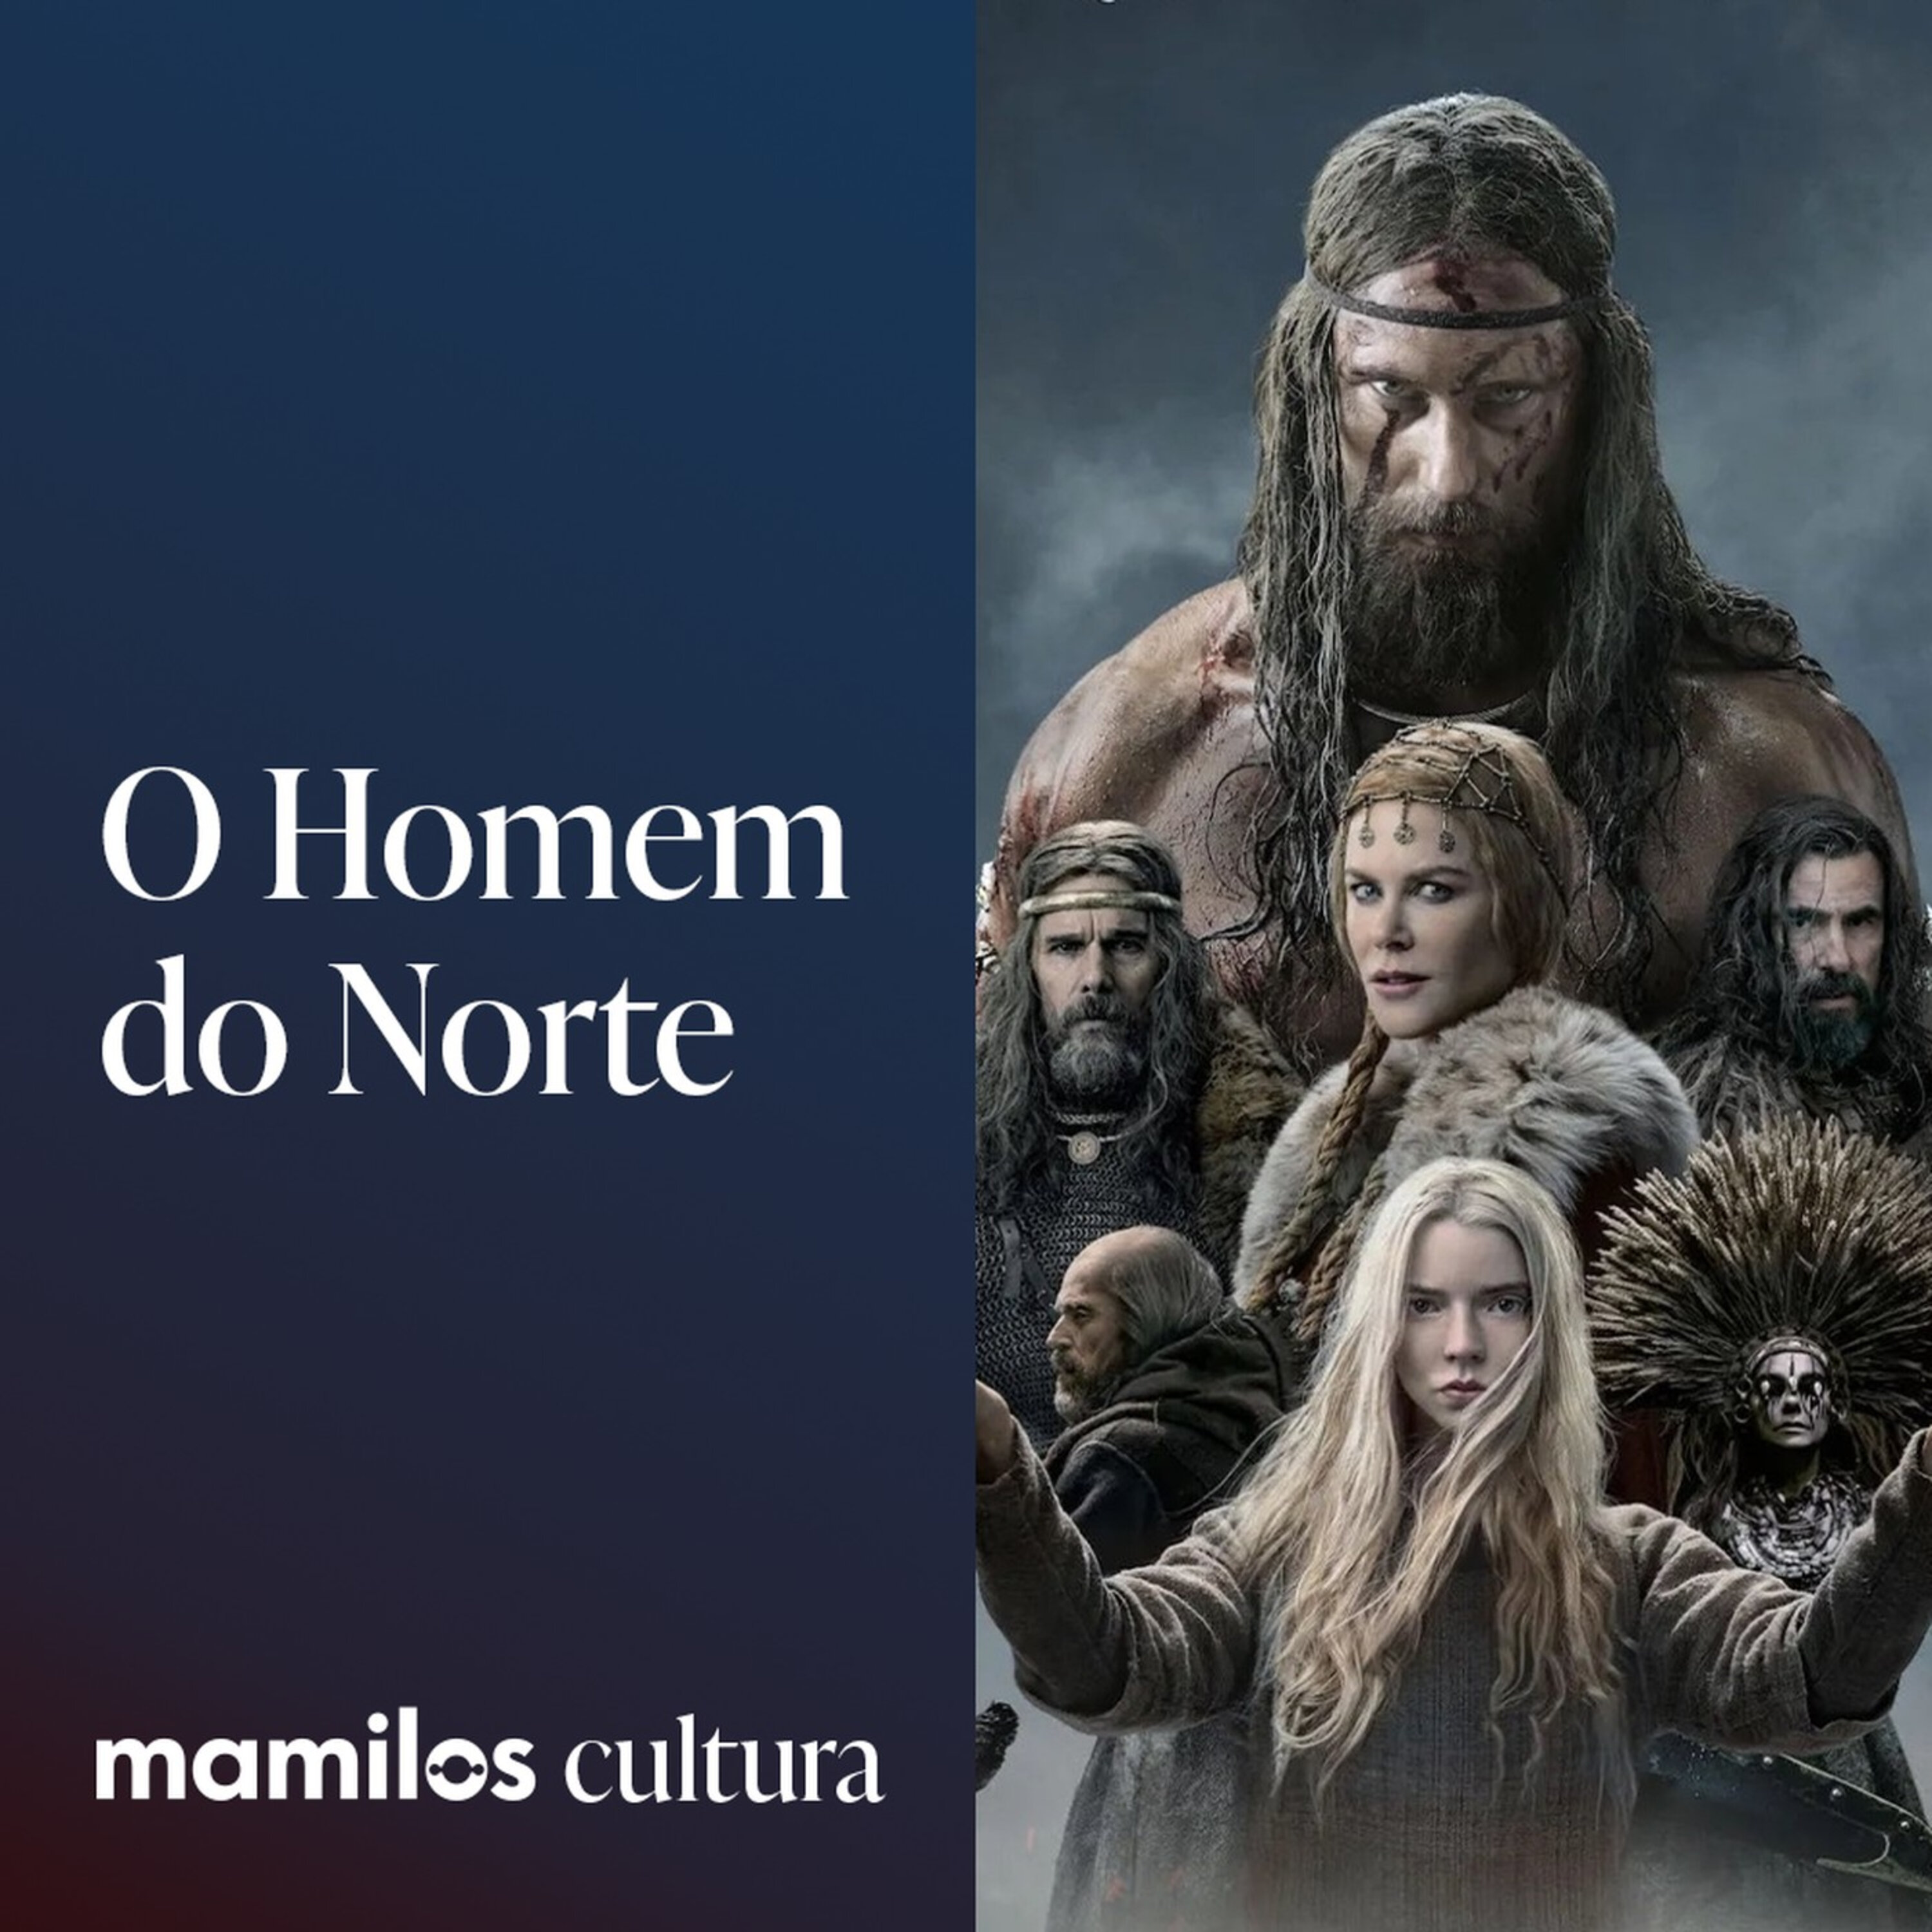 Mamilos Cultura 76: Filme “O Homem do Norte” - vingança mística